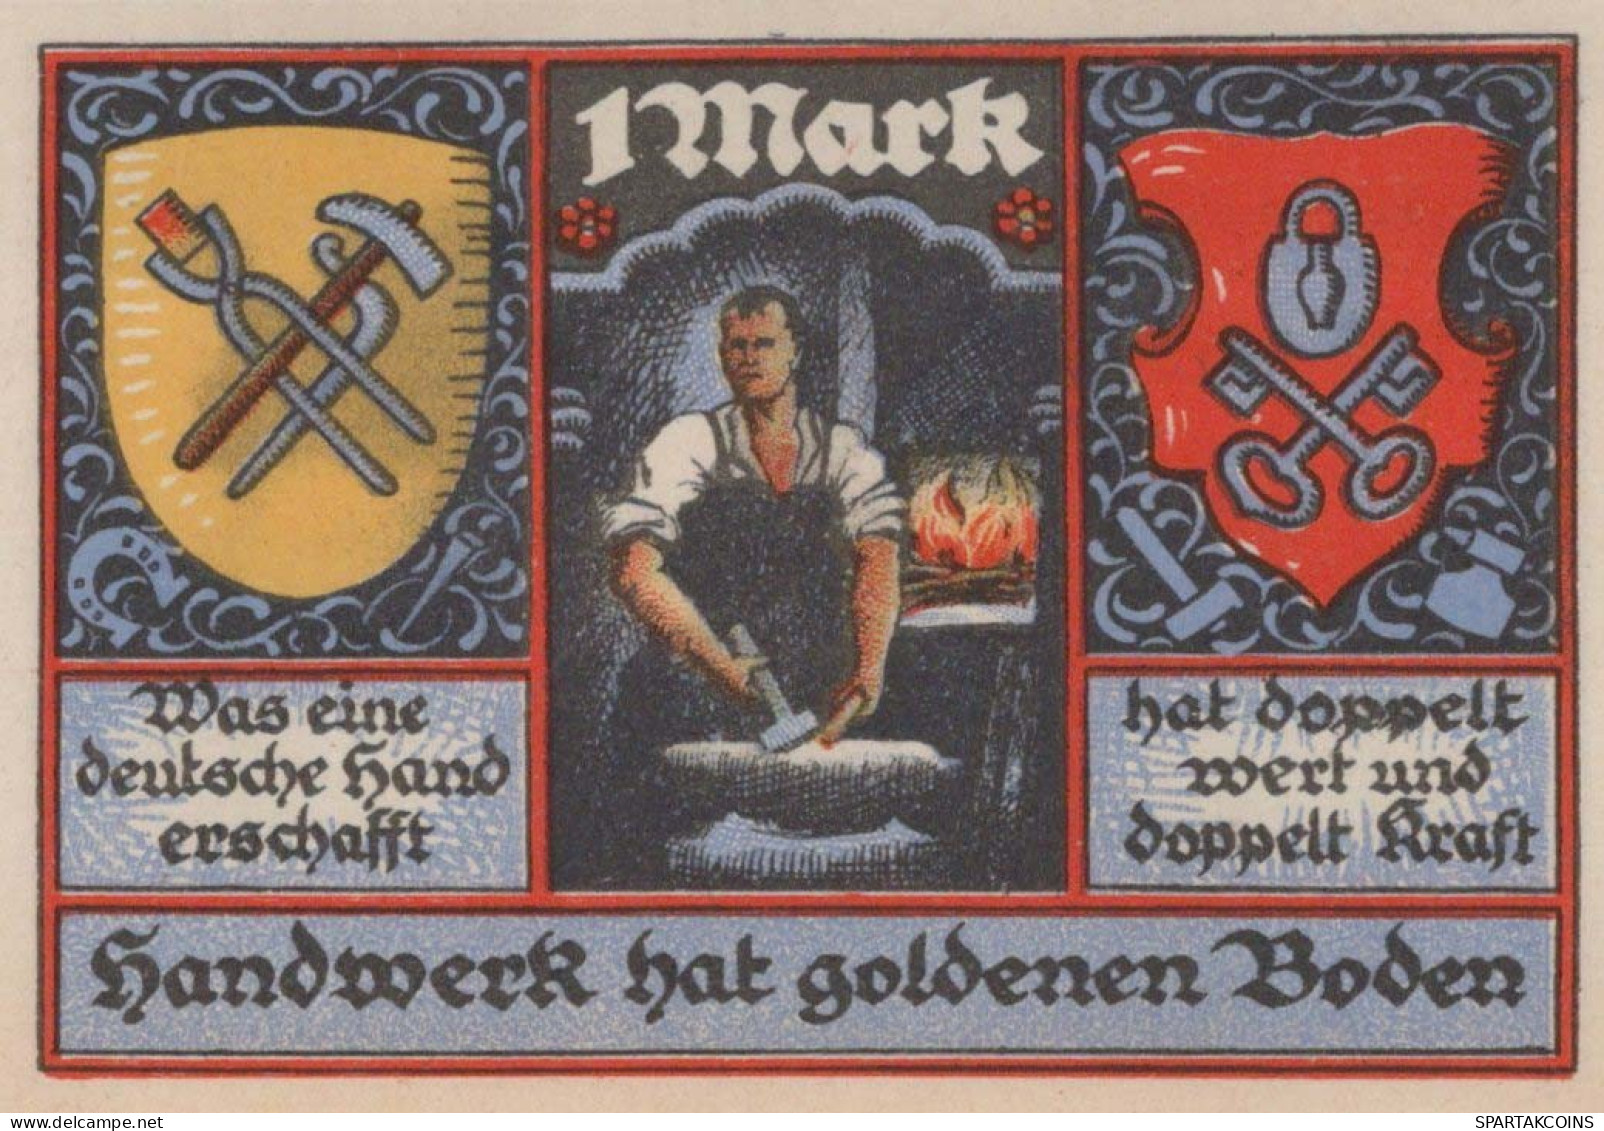 1 MARK 1922 Stadt STOLZENAU Hanover DEUTSCHLAND Notgeld Banknote #PF948 - [11] Local Banknote Issues